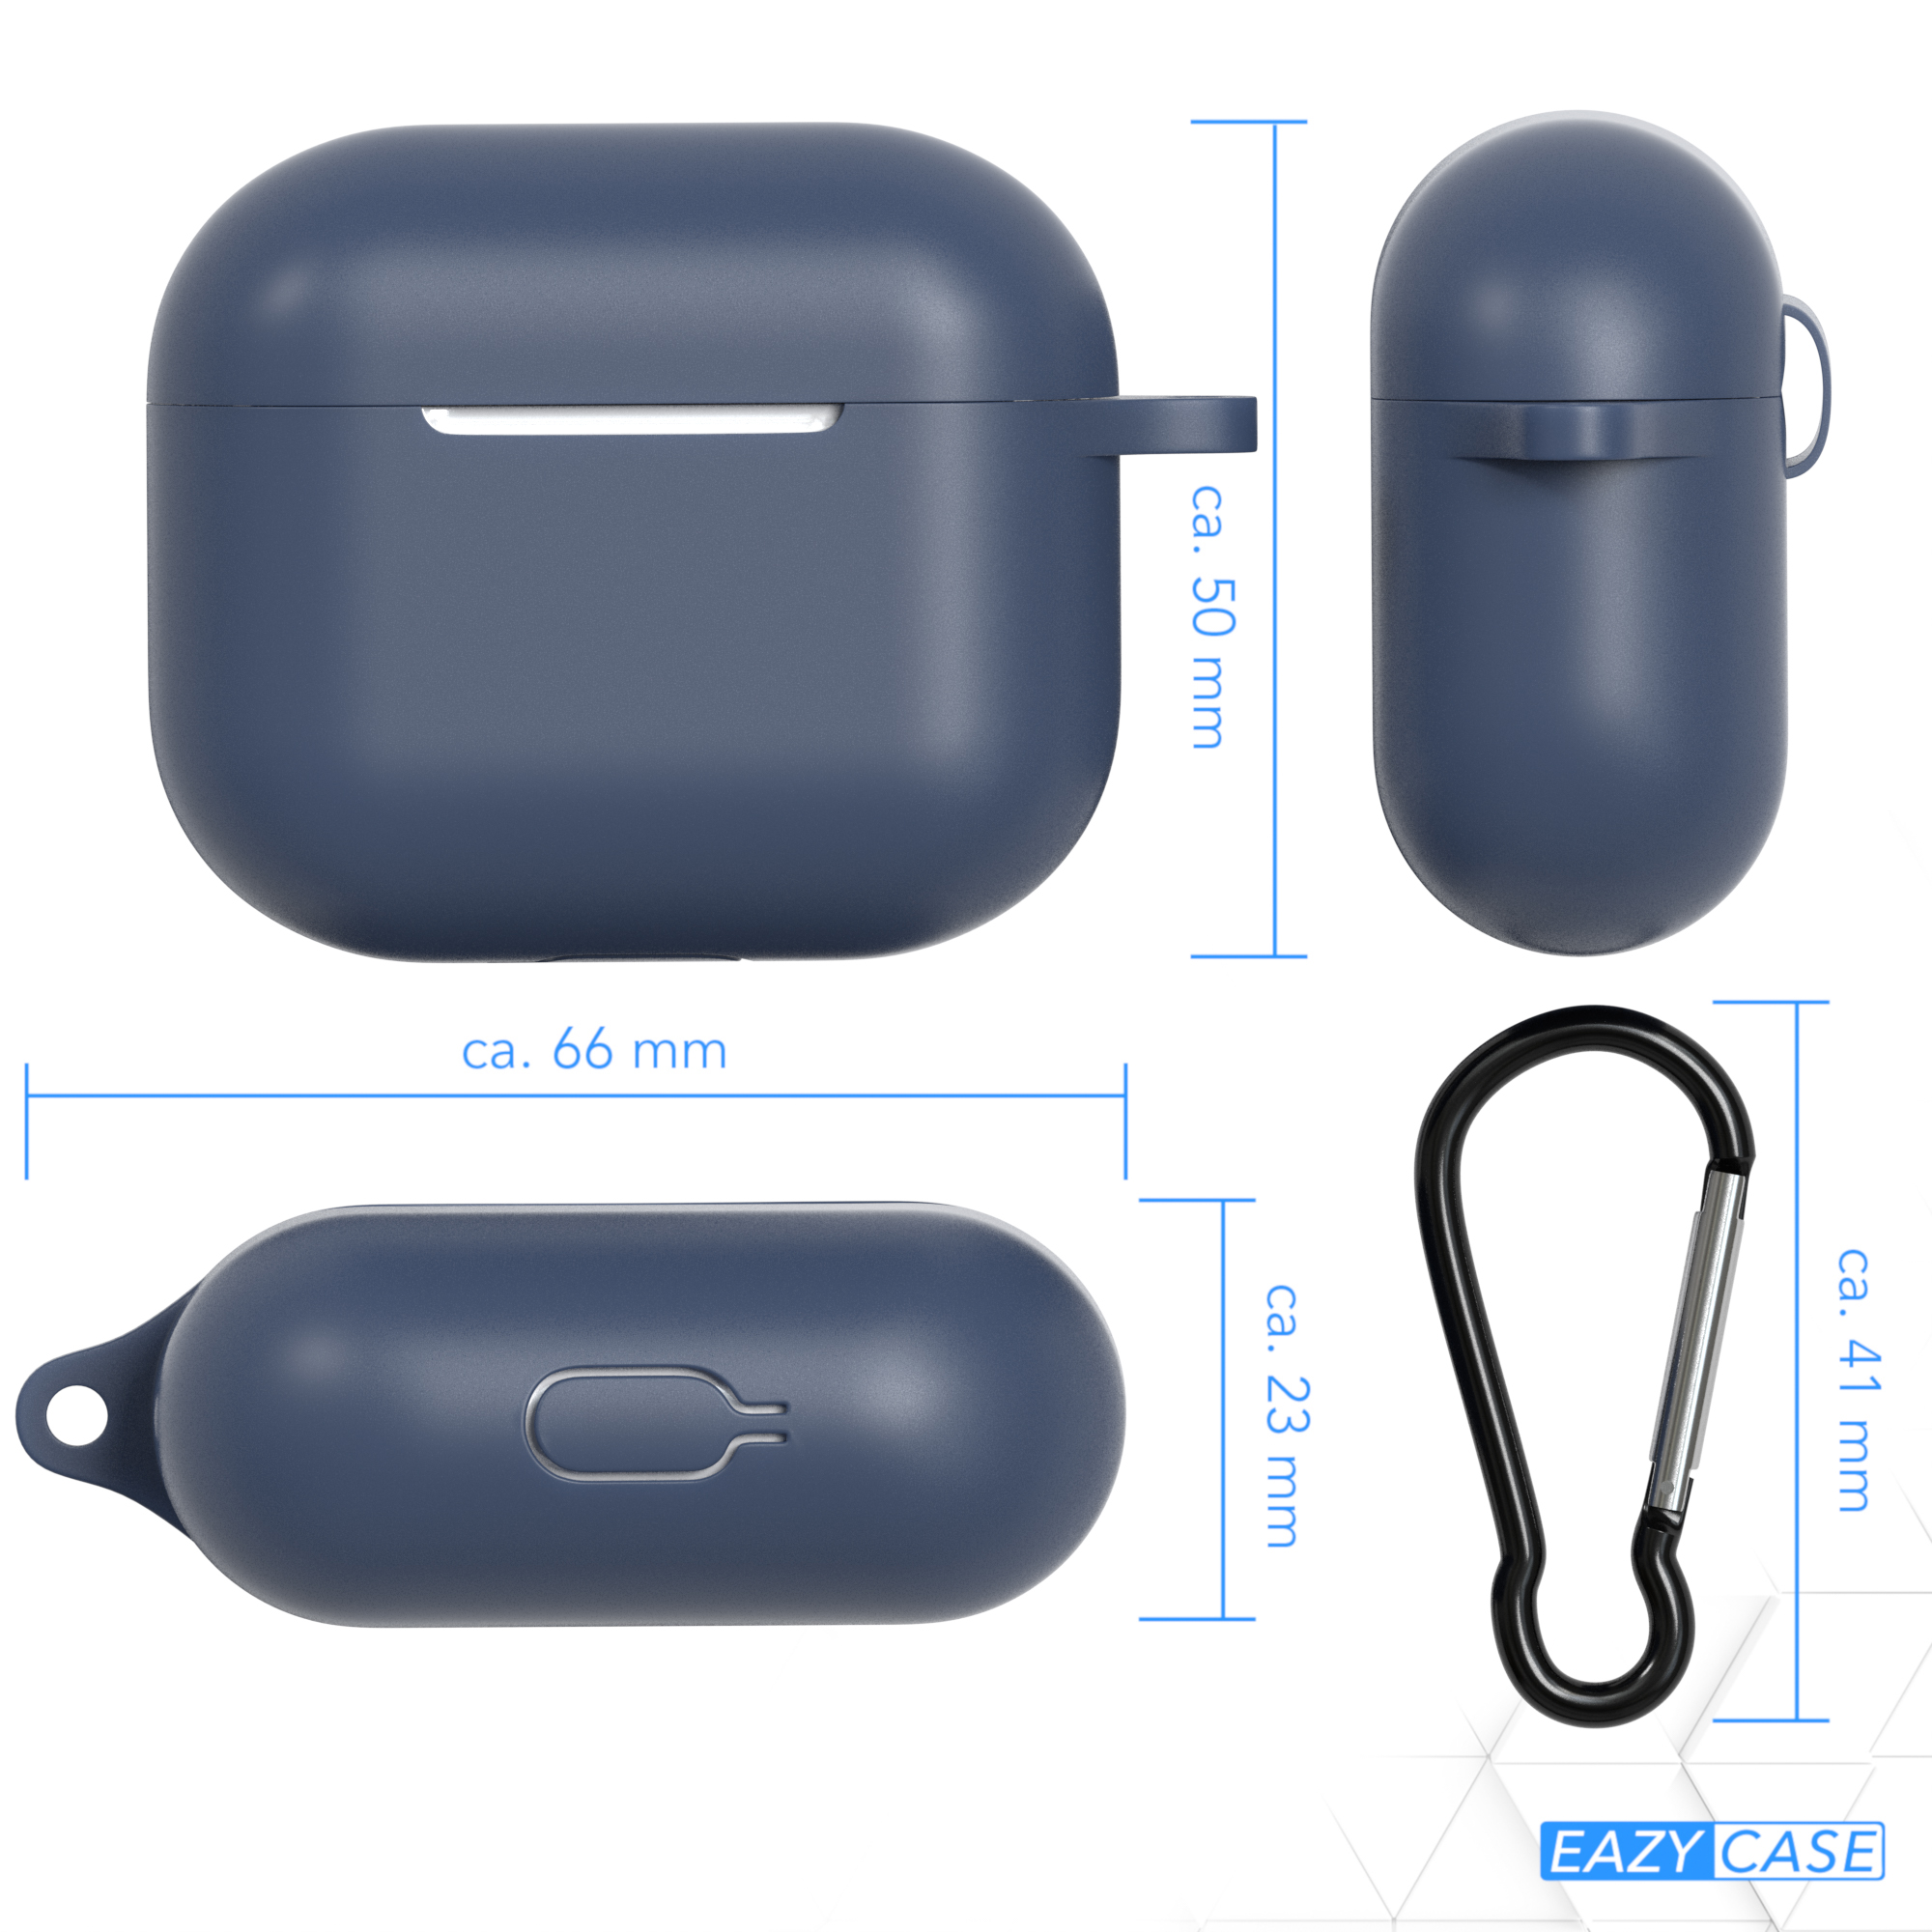 EAZY CASE 3 Case passend Silikon für: Sleeve Schutzhülle Blau AirPods Apple